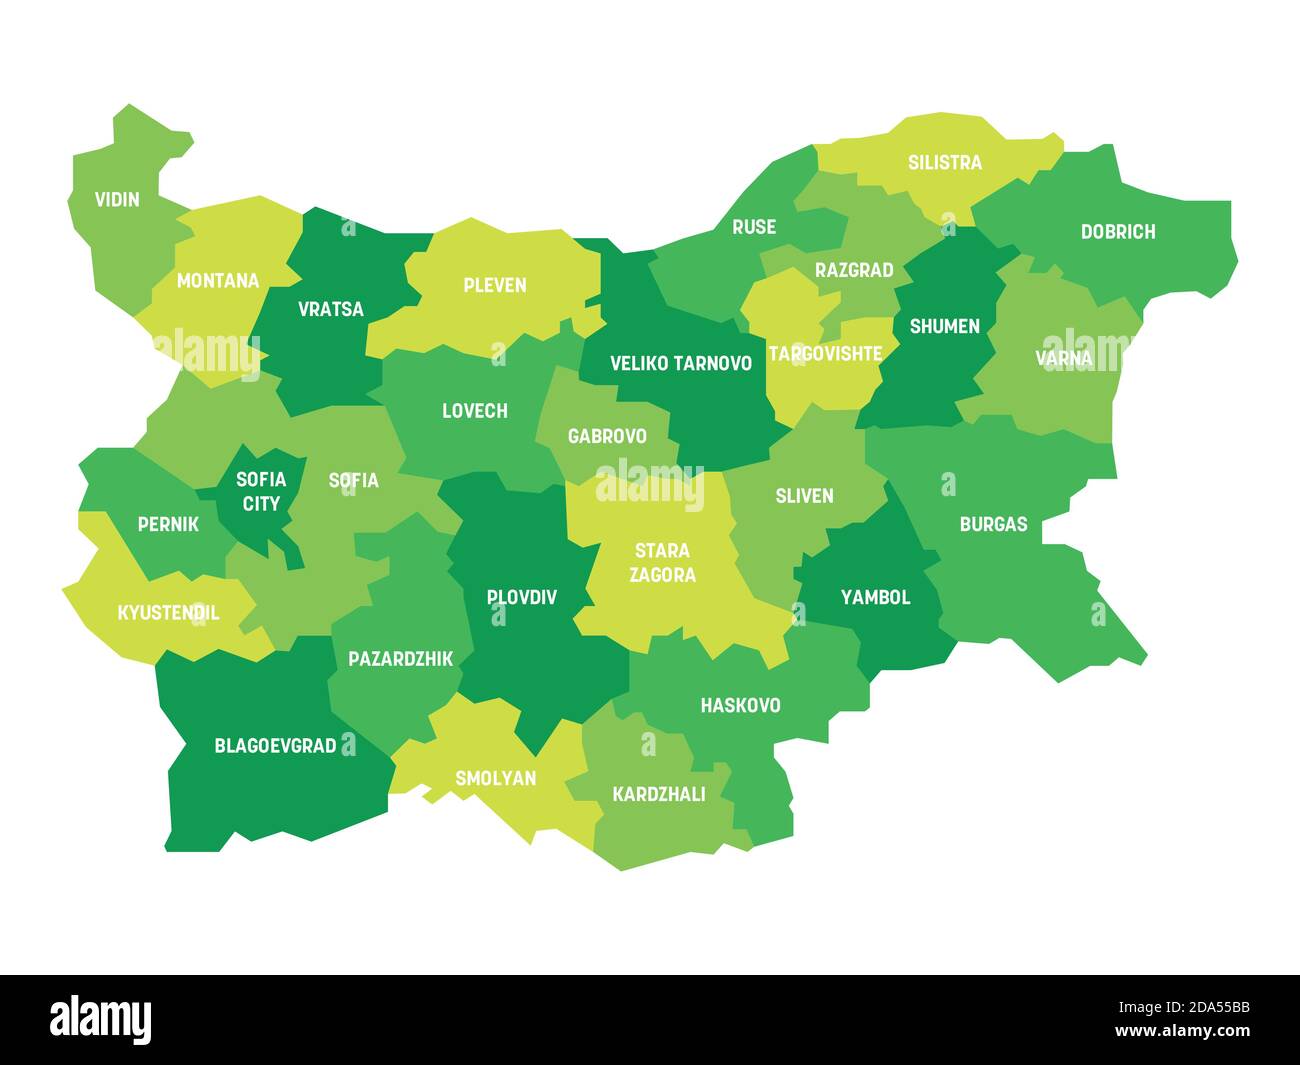 Grüne politische Landkarte von Bulgarien. Verwaltungsabteilungen - Staaten. Einfache flache Vektorkarte mit Beschriftungen. Stock Vektor